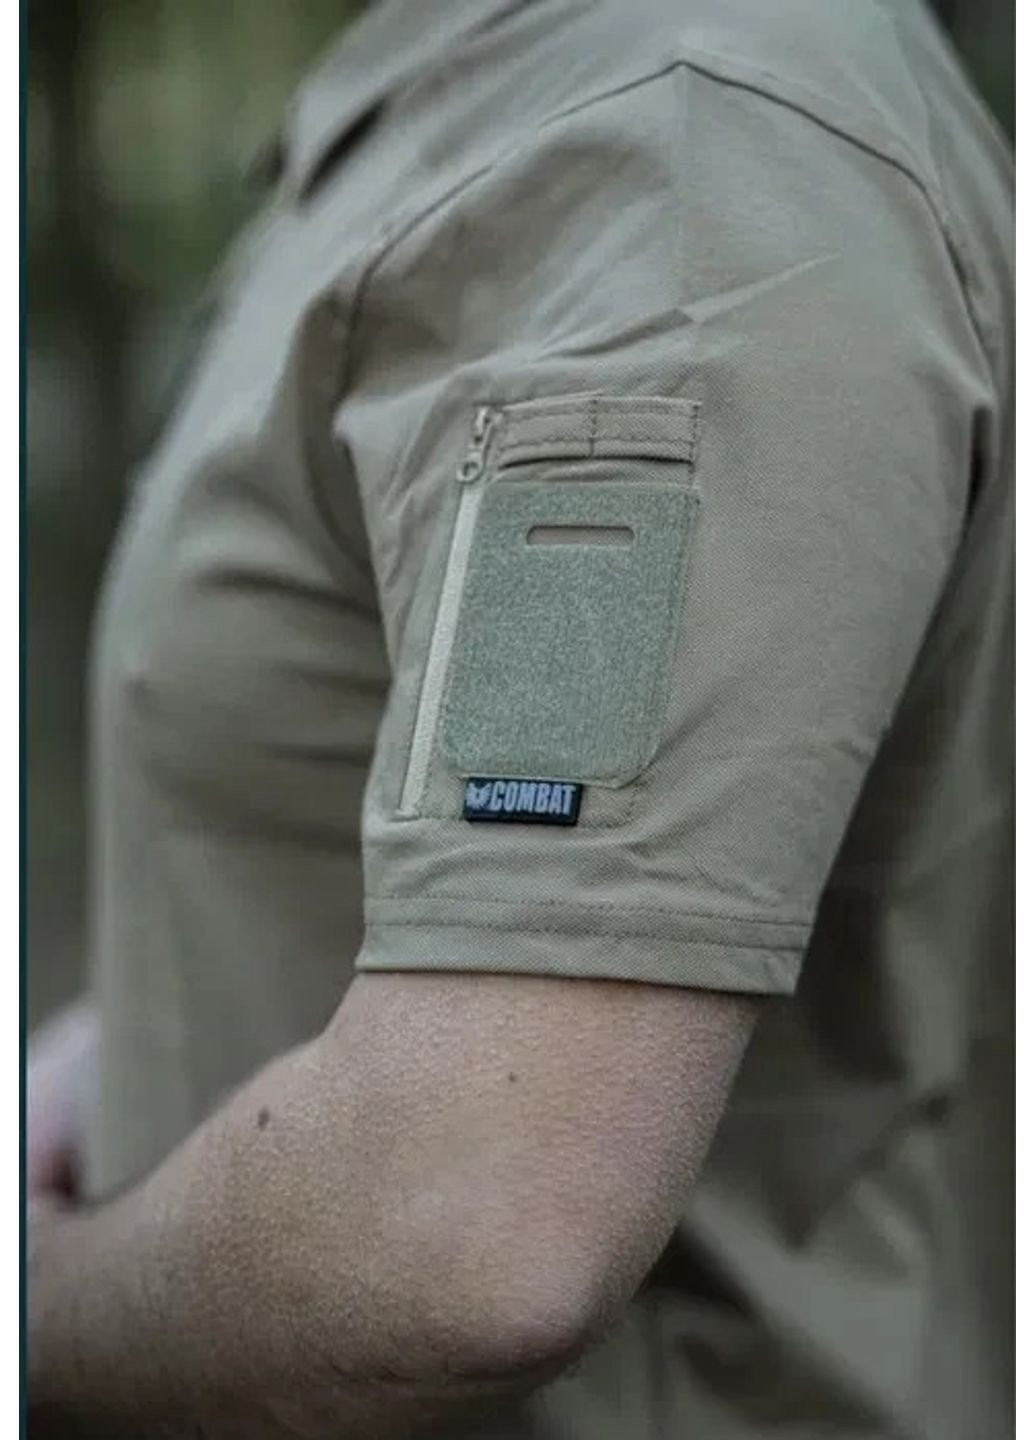 Светло-коричневая футболка мужская тактическая поло потоотводящая всу tactical s 46 р 6619 койот Combat